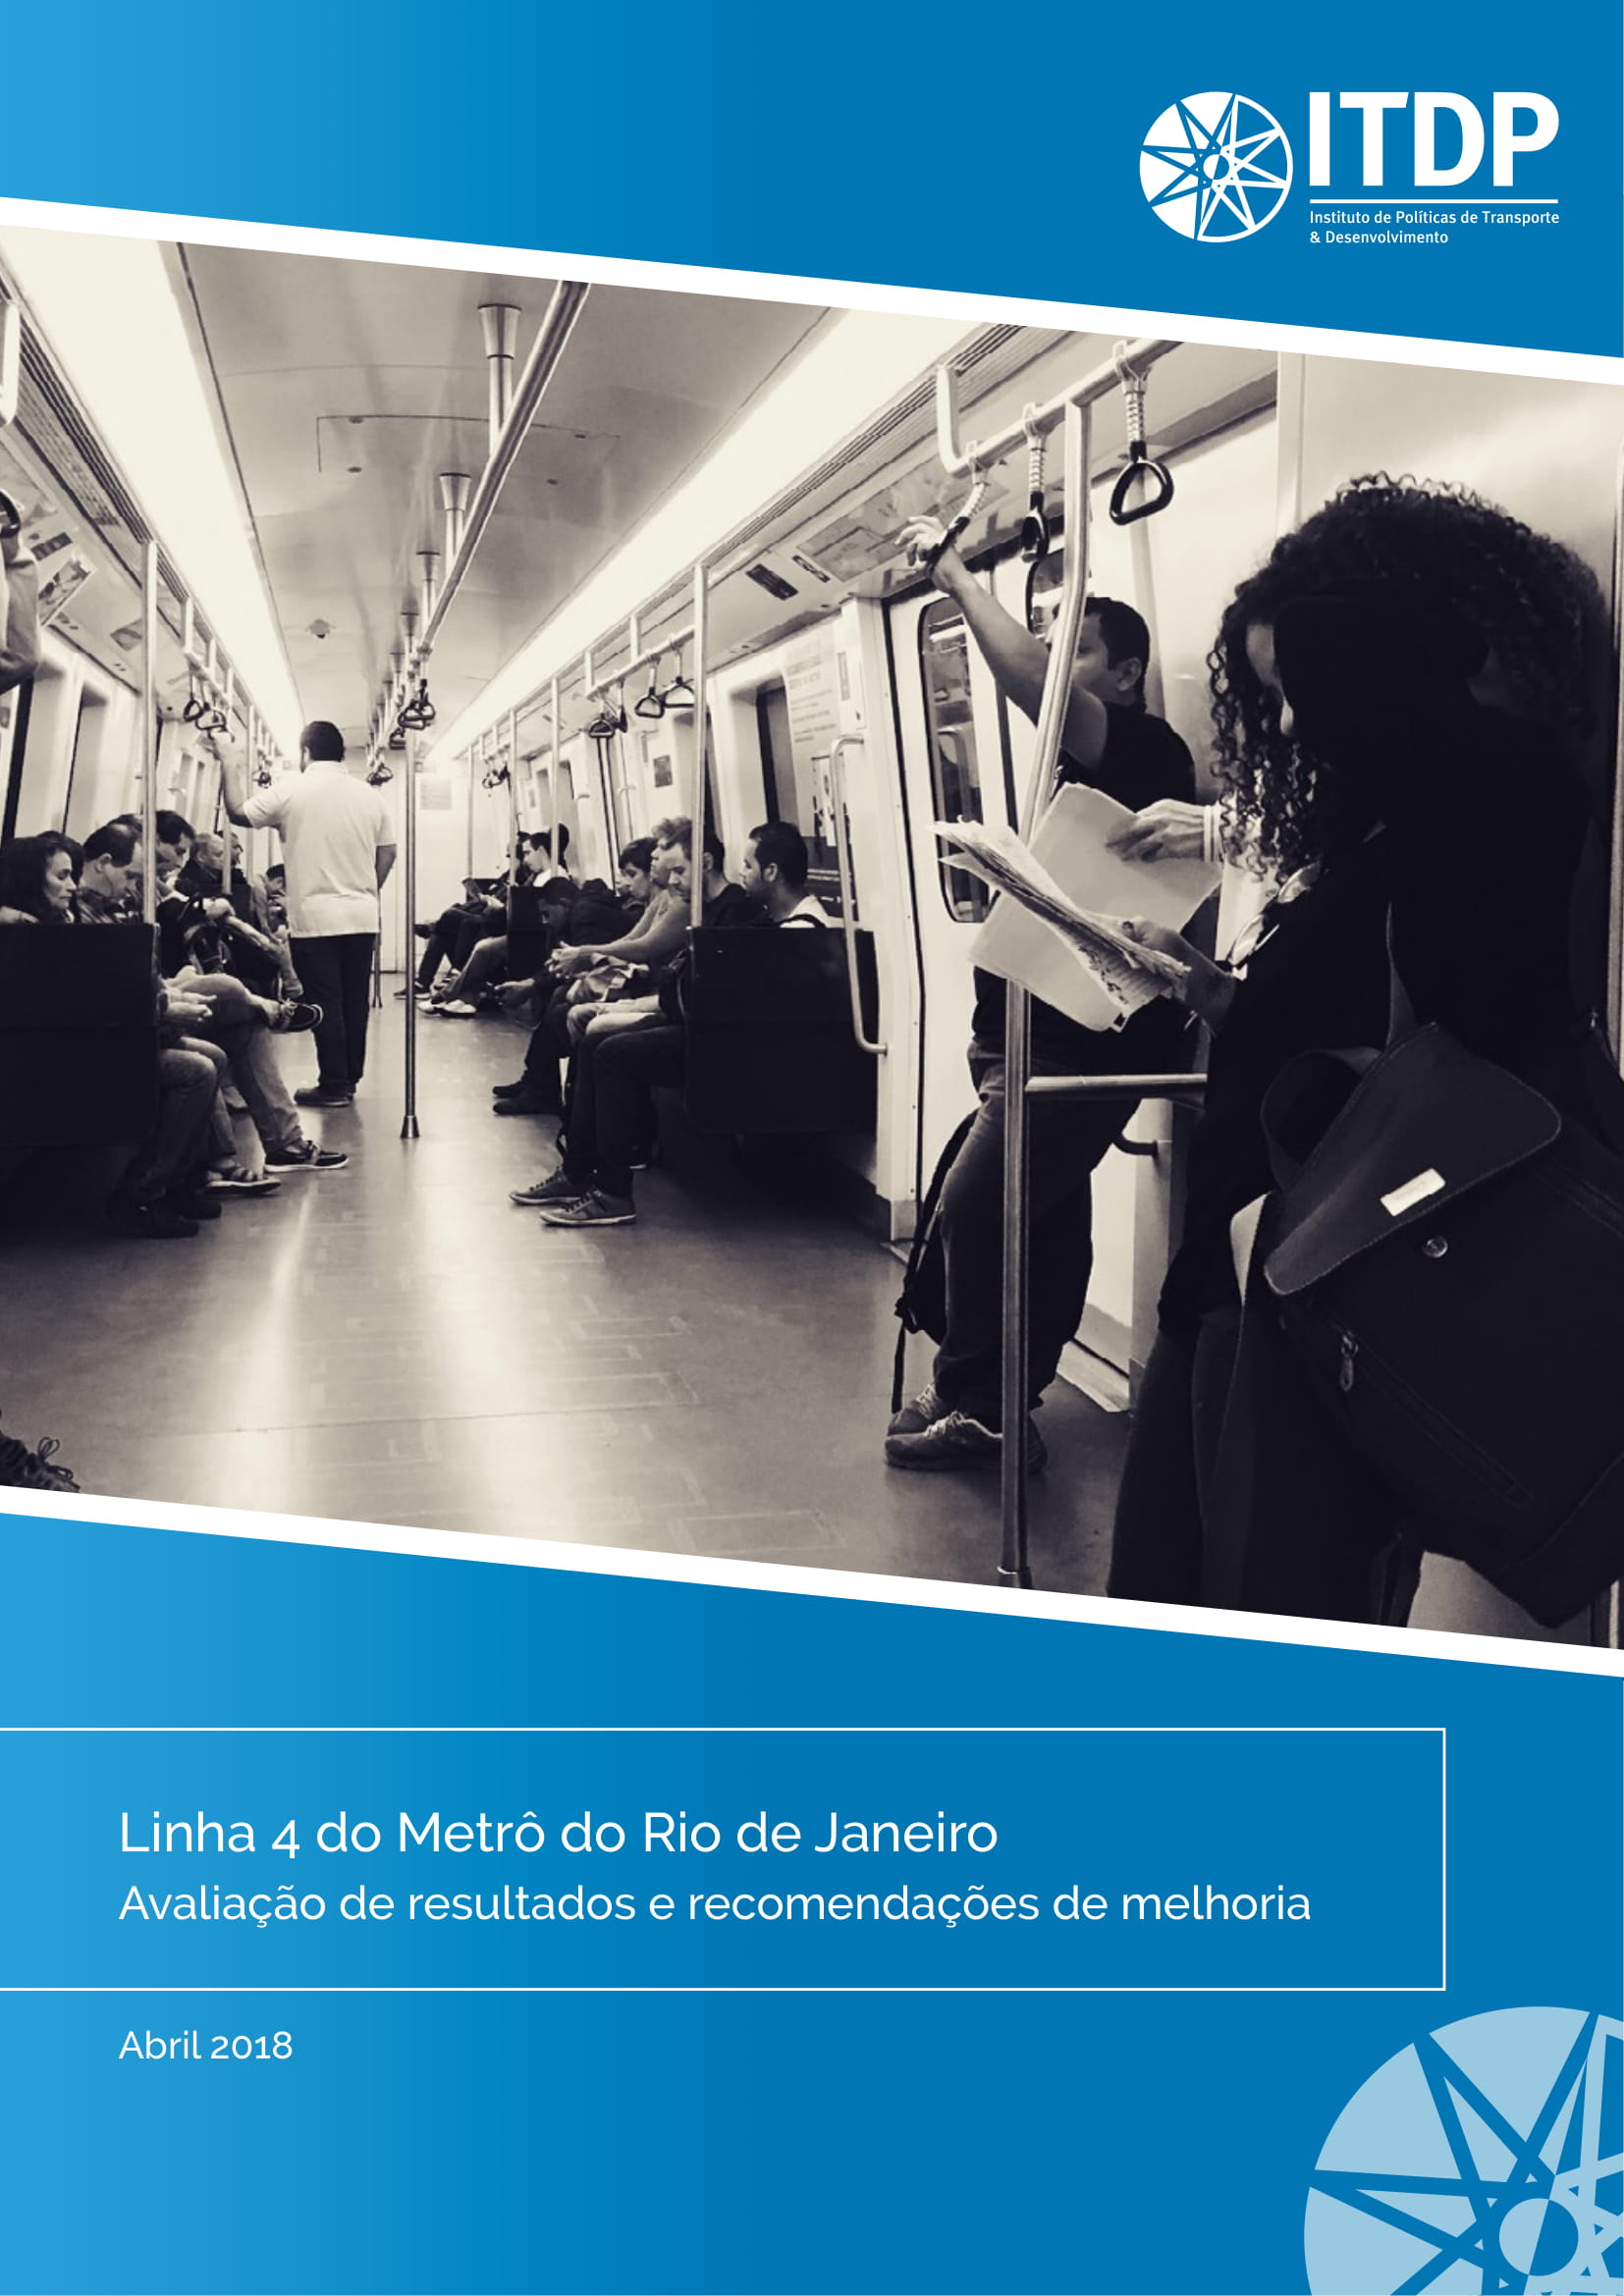 Linha 4 do metrô do Rio de Janeiro - Avaliação de resultados e recomendações de melhoria